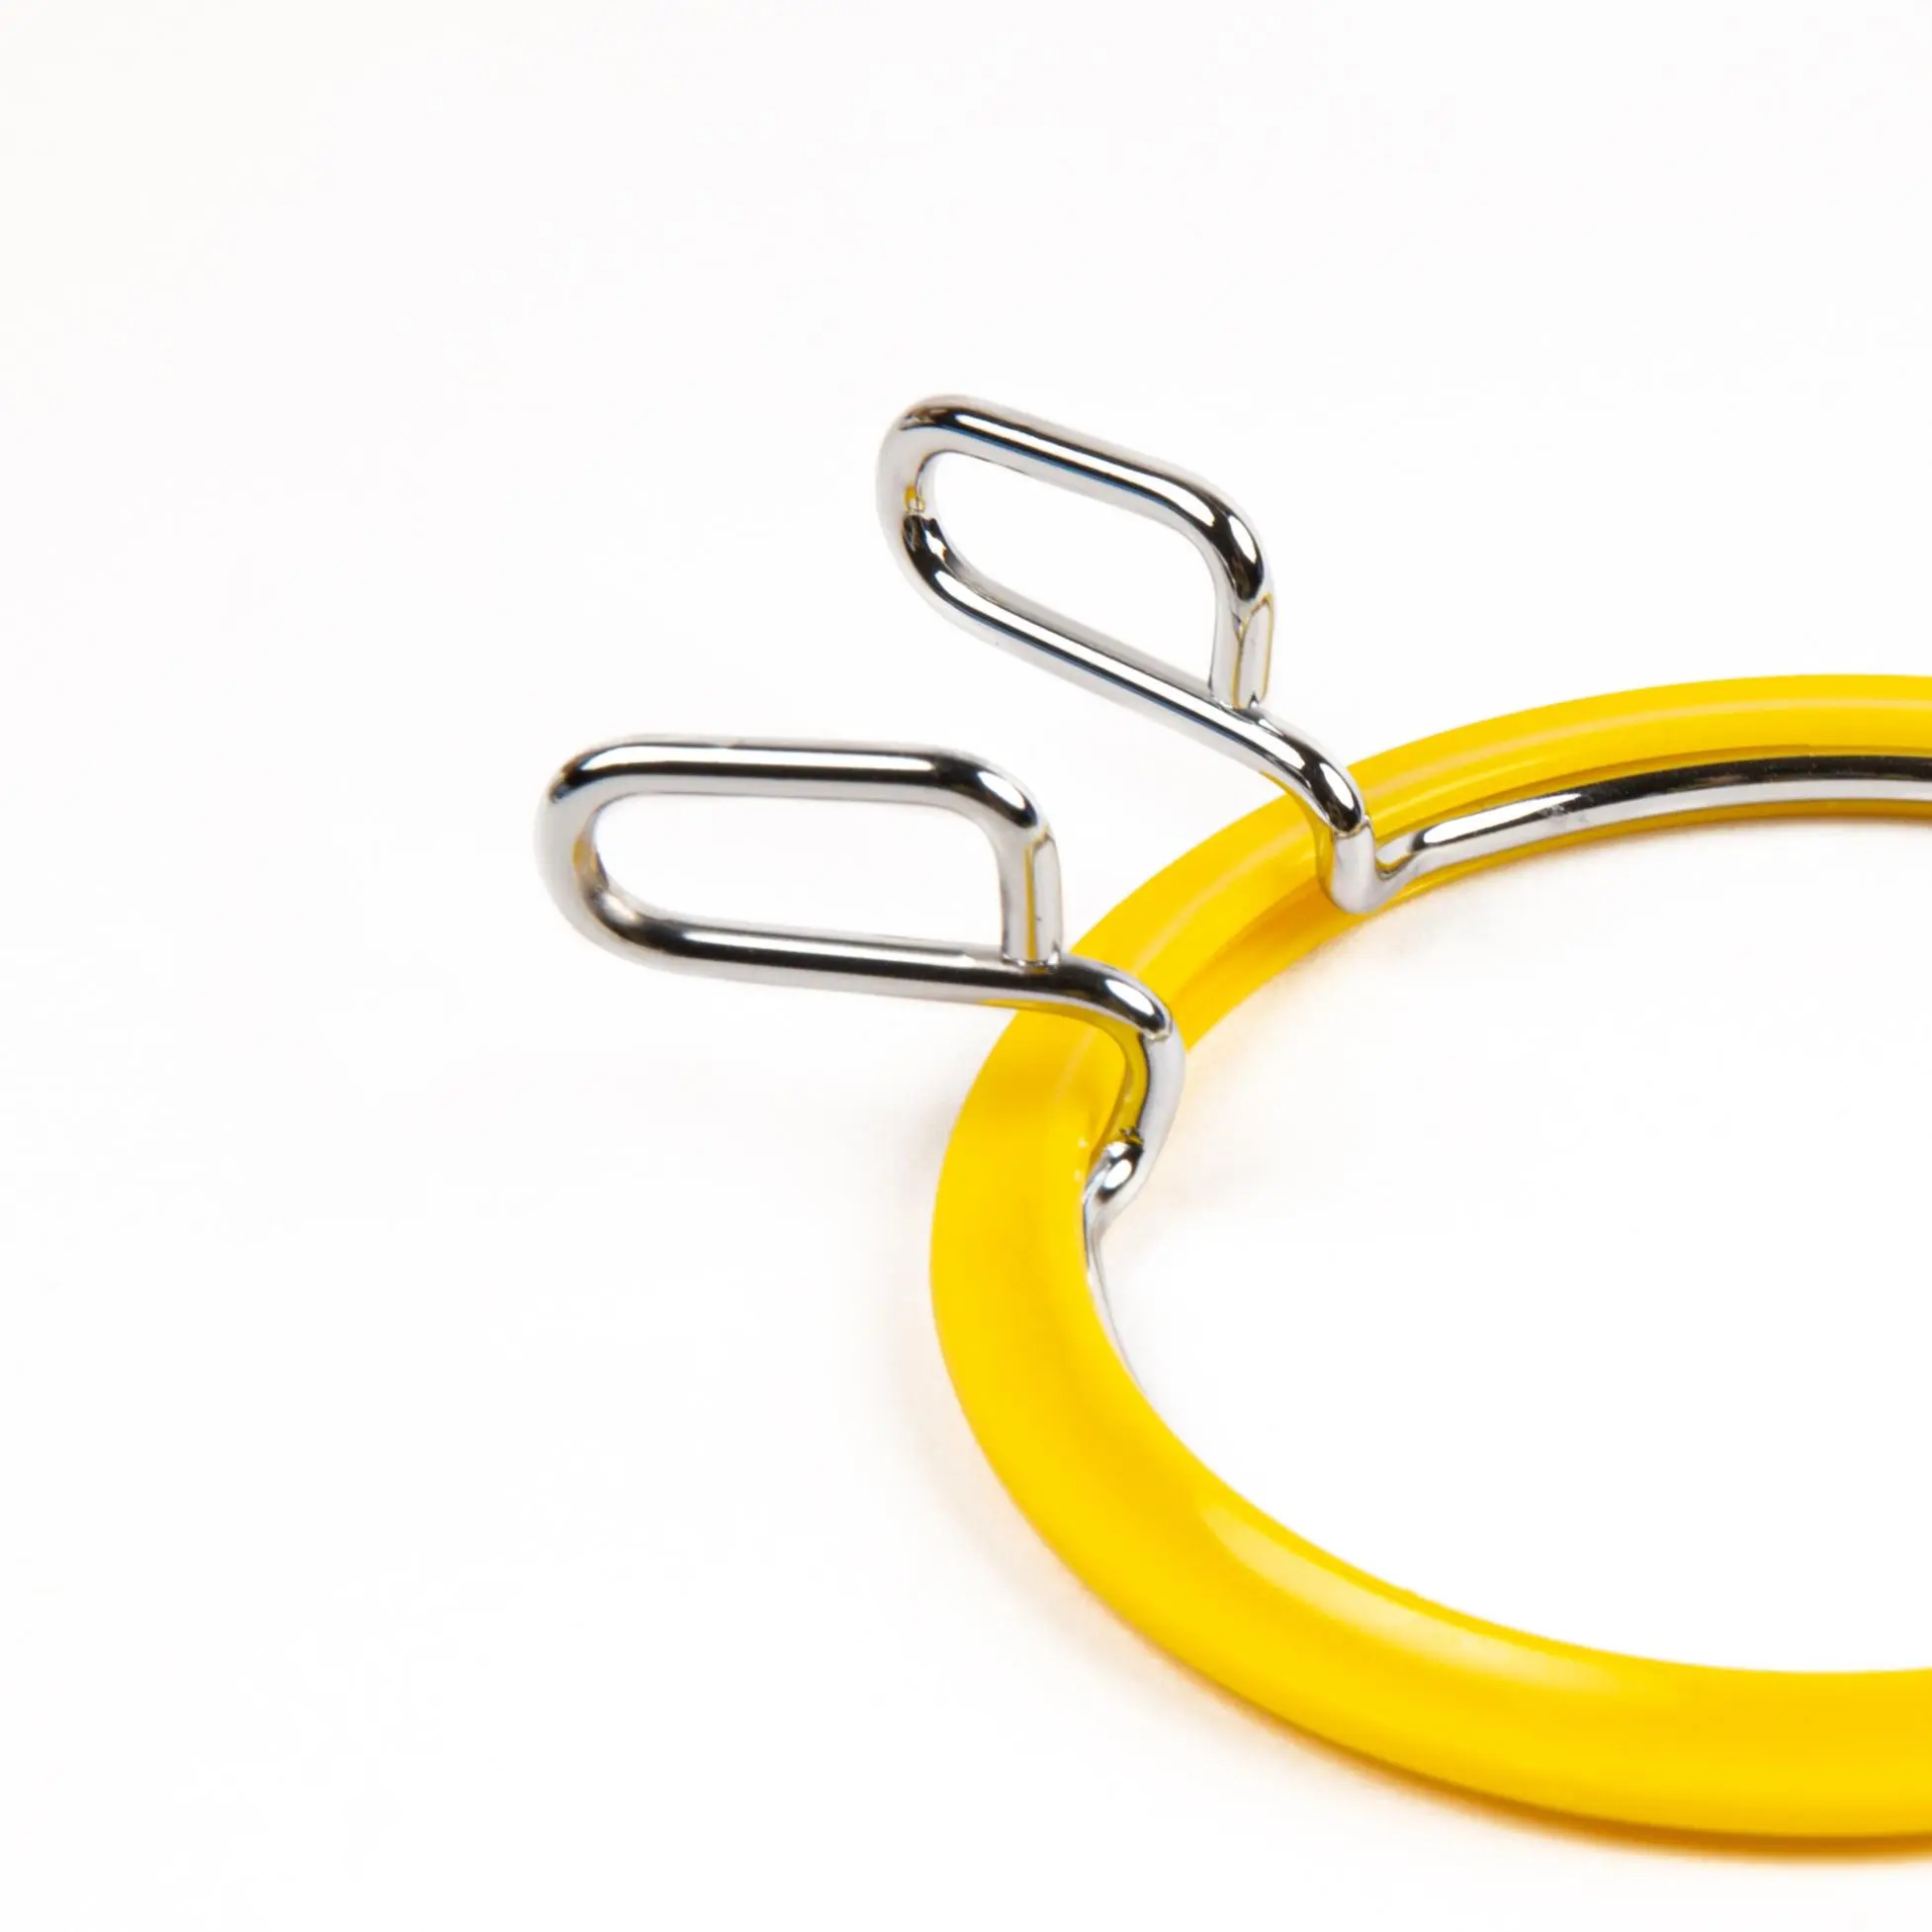 160-3/жовті Пяльці Nurge пружинні для вишивання та штопки, висота обідка 2,6мм, діаметр 58мм